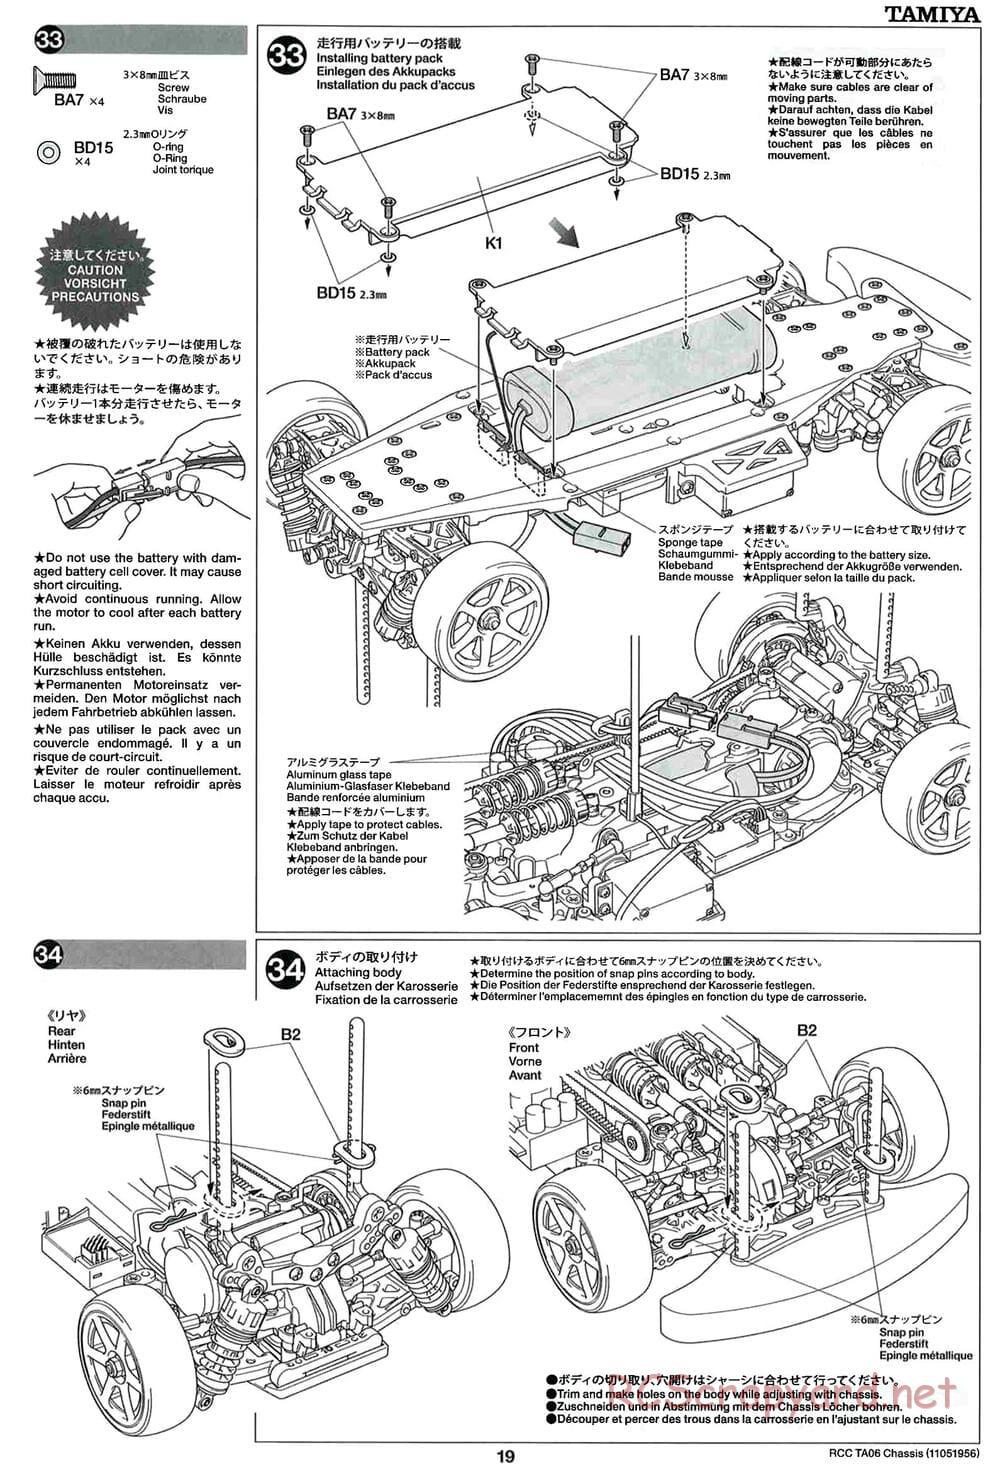 Tamiya - TA06 Chassis - Manual - Page 19